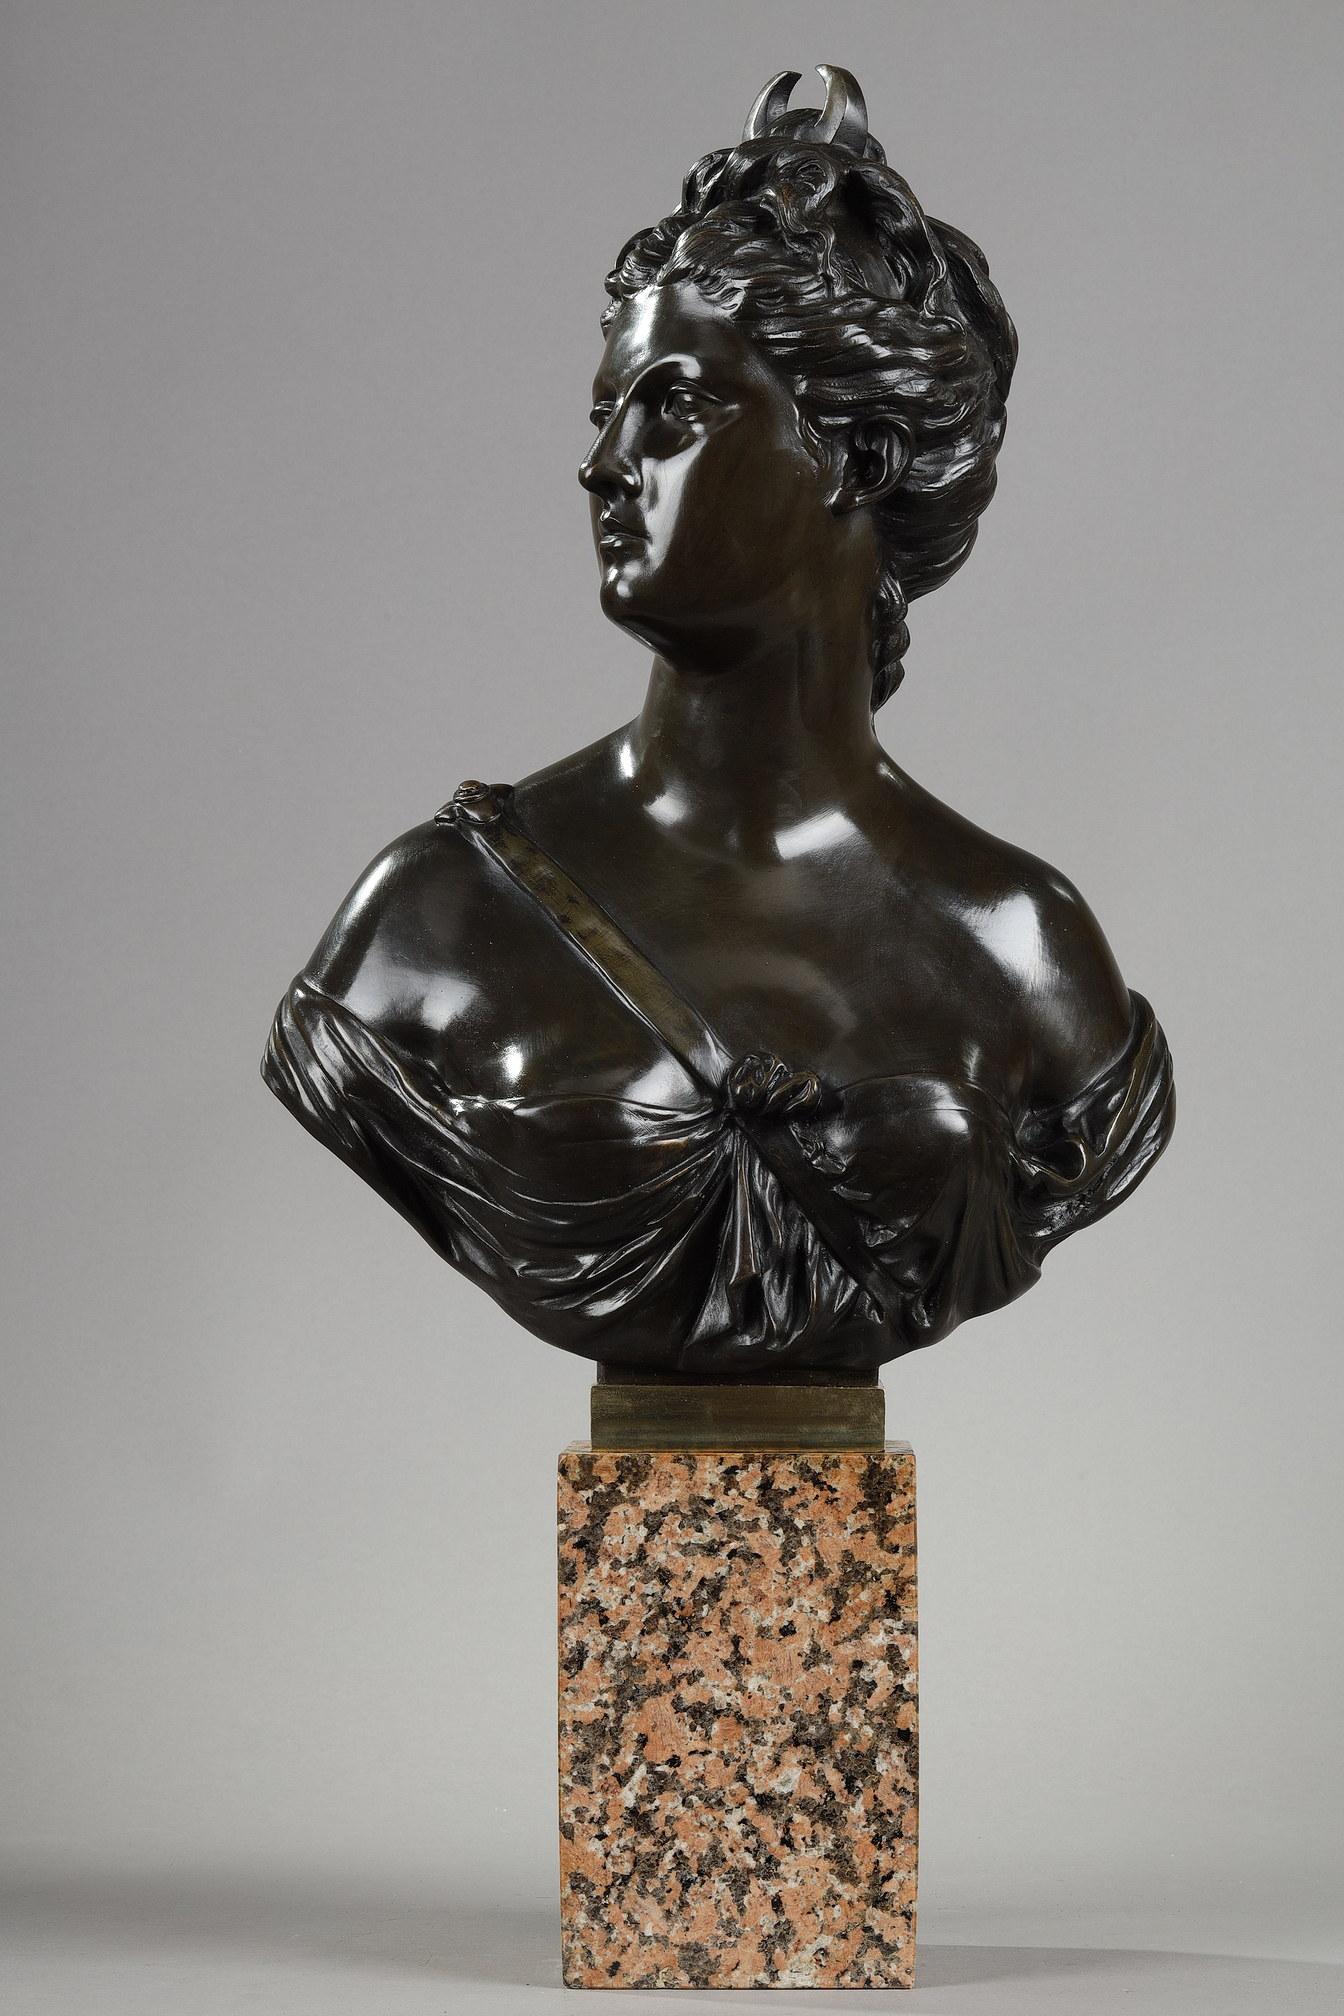 Sculpture en bronze représentant Diane la chasseuse d'après Jean-Antoine Houdon (1741- 1828). Dans la mythologie romaine, Diane est la déesse de la chasse et de la nuit, semblable à Artemis dans la mythologie grecque. Elle est représentée portant